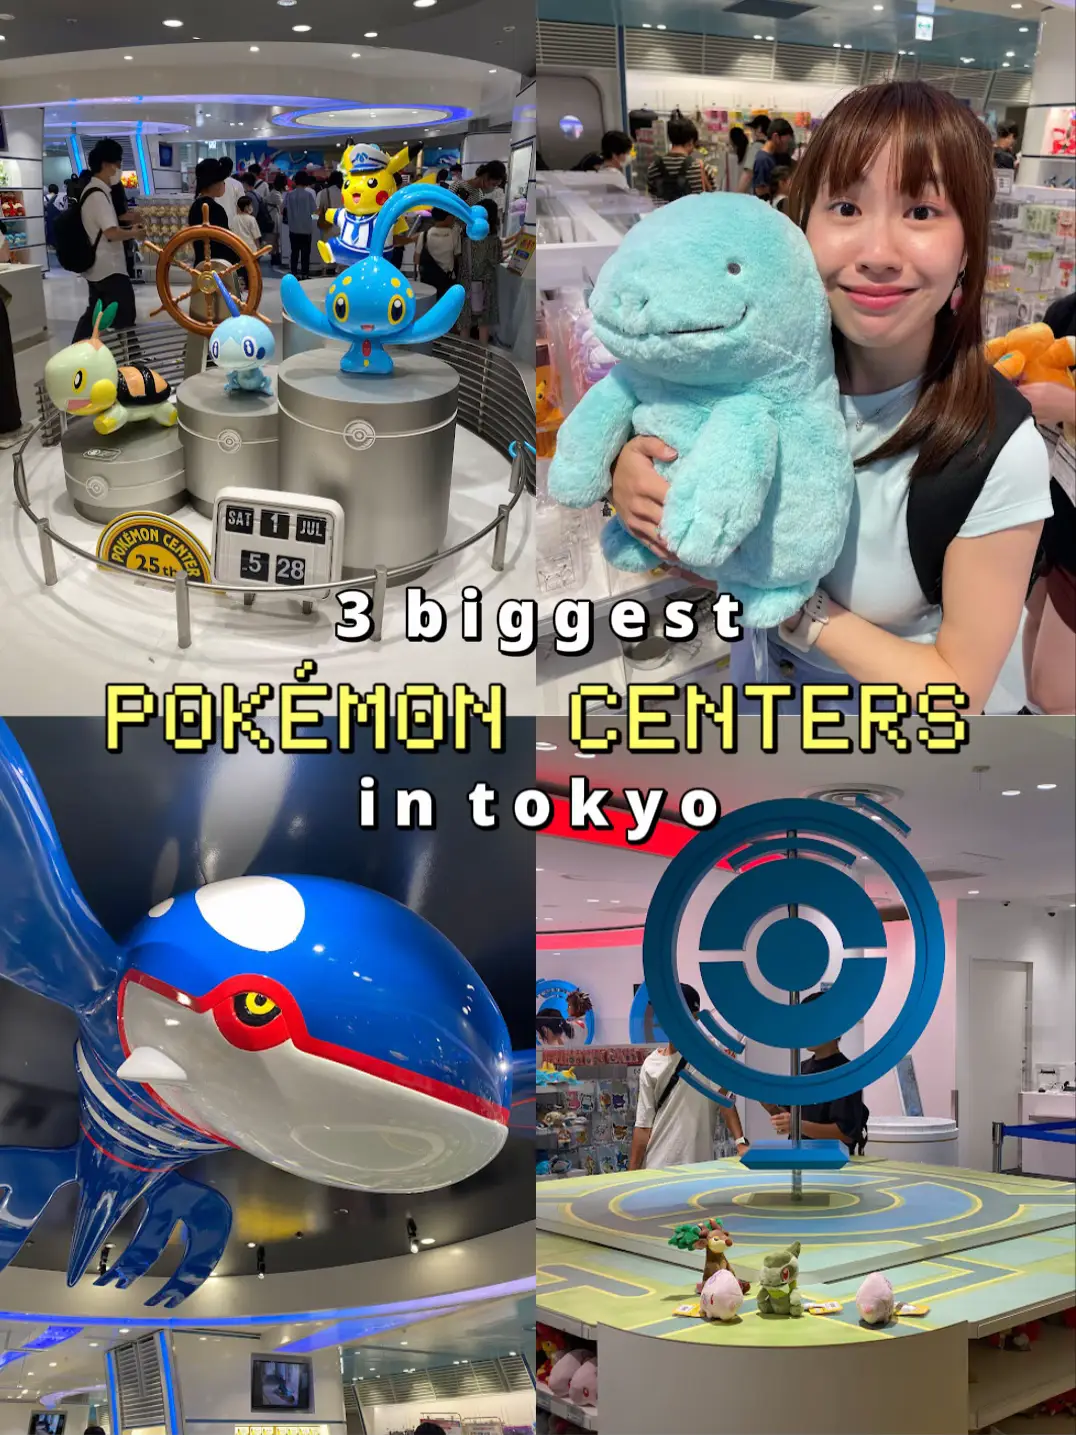 Pokémon Center Set to Open at Tokyo Skytree!